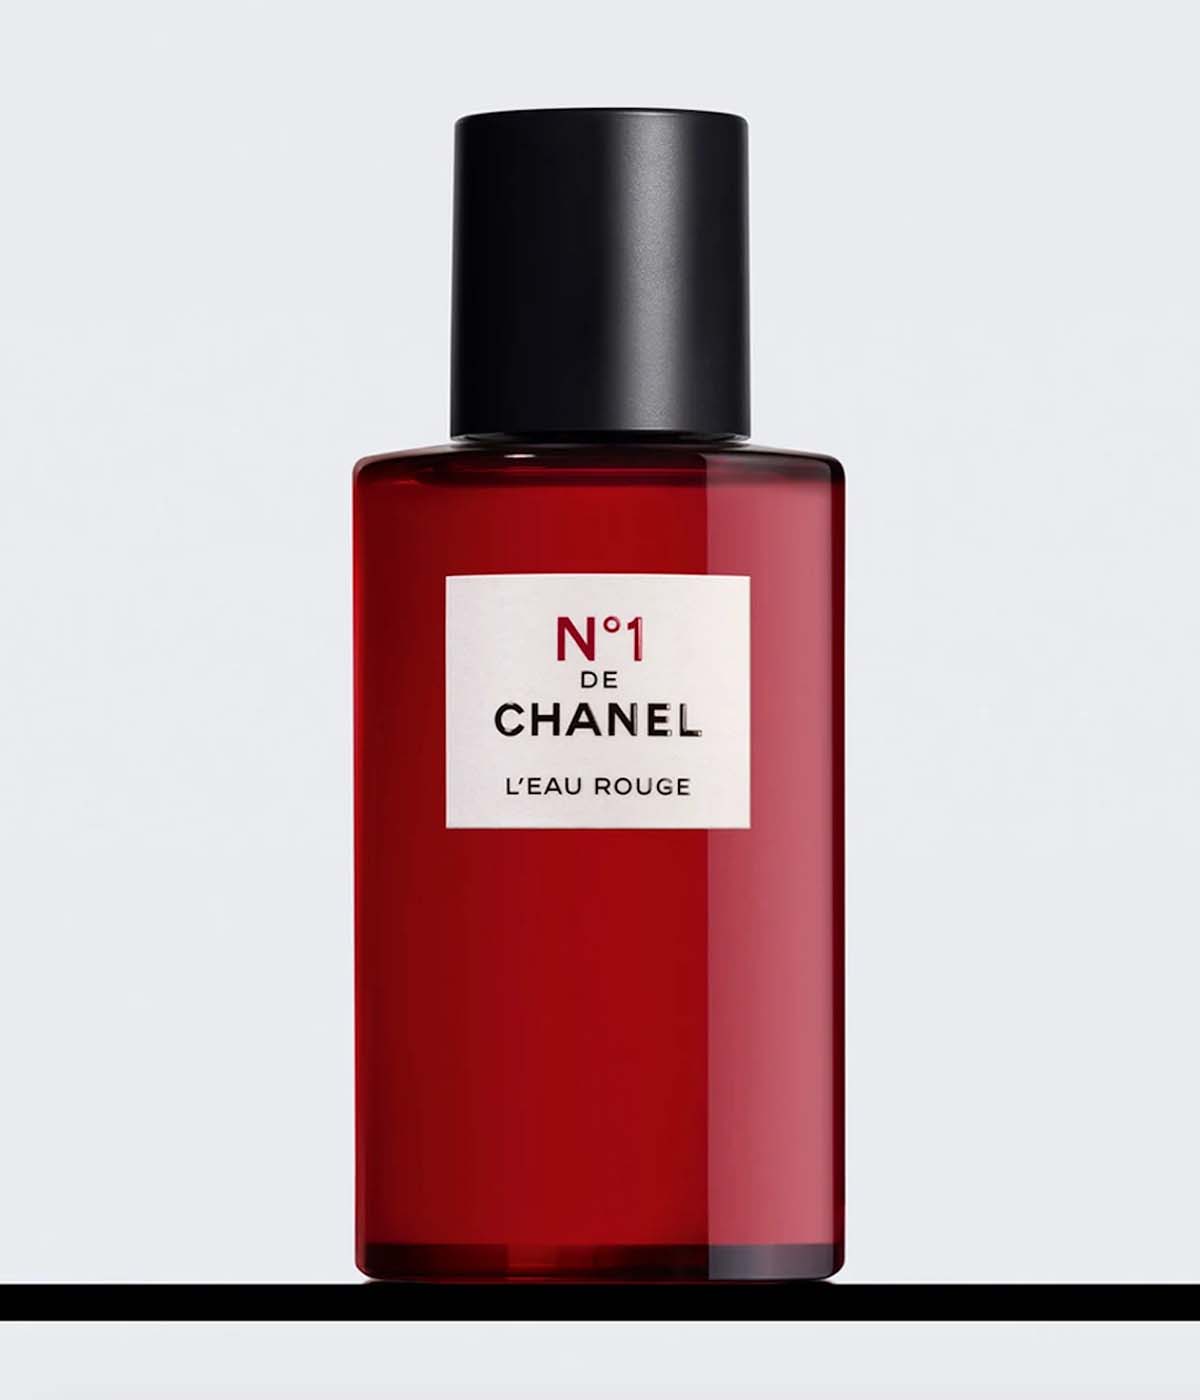 N°1 DE CHANEL L'EAU ROUGE revitalising fragrance mist 